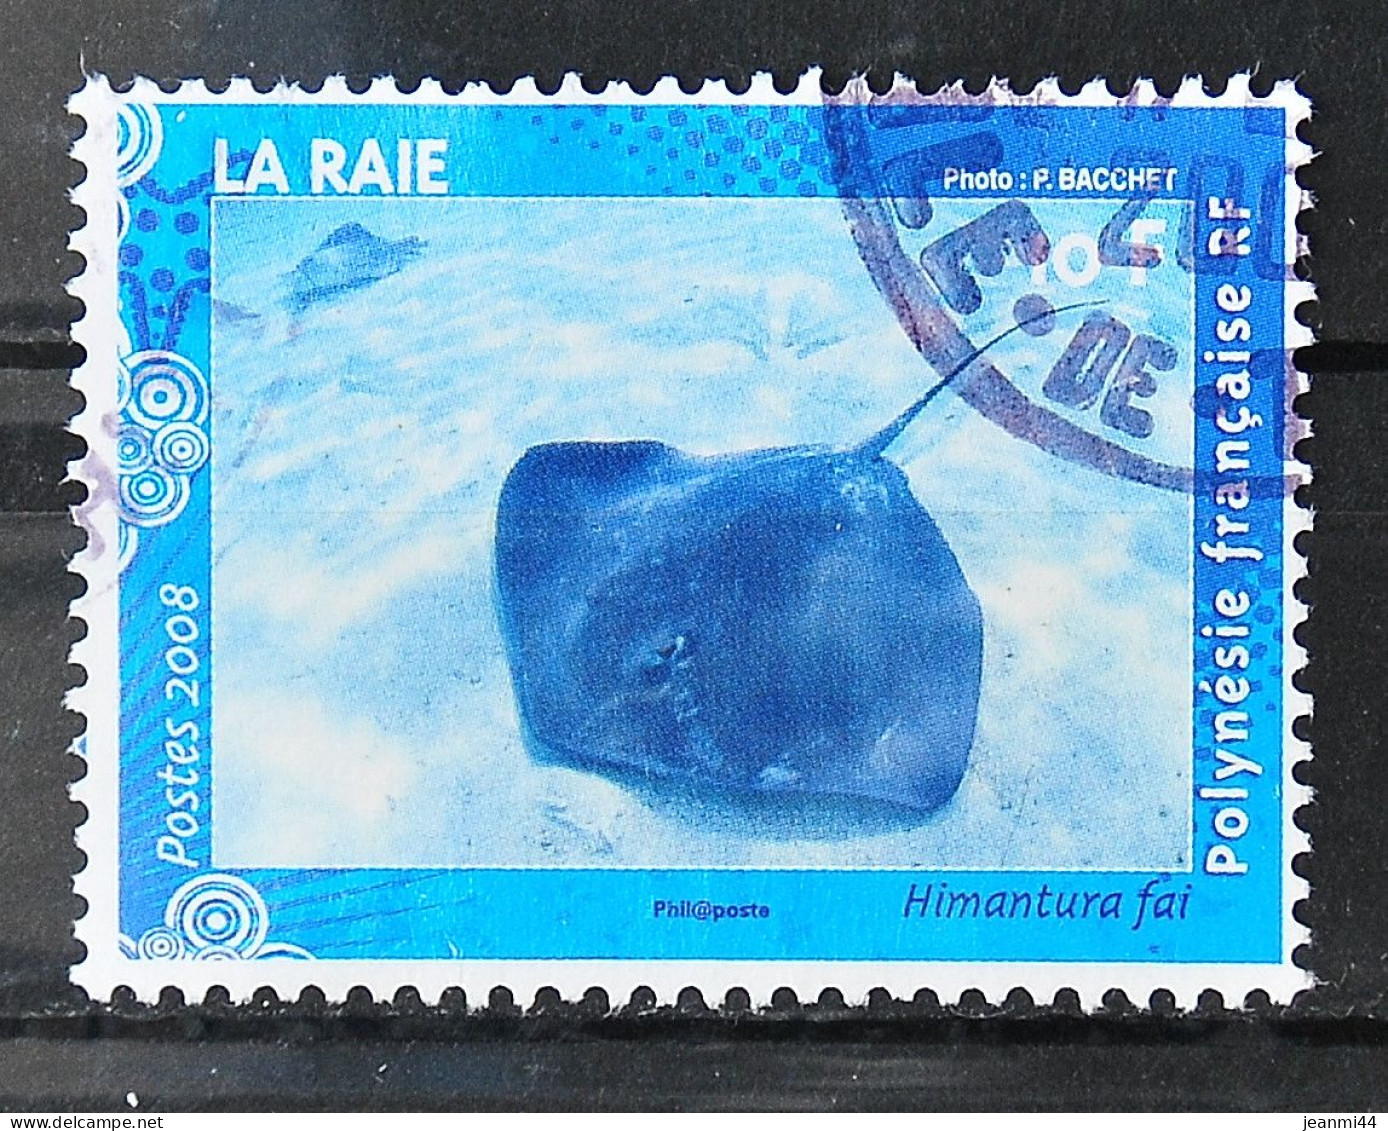 POLYNESIE FRANCAISE - 2008 - La Raie N° 824 - Cachet à Date - Usati